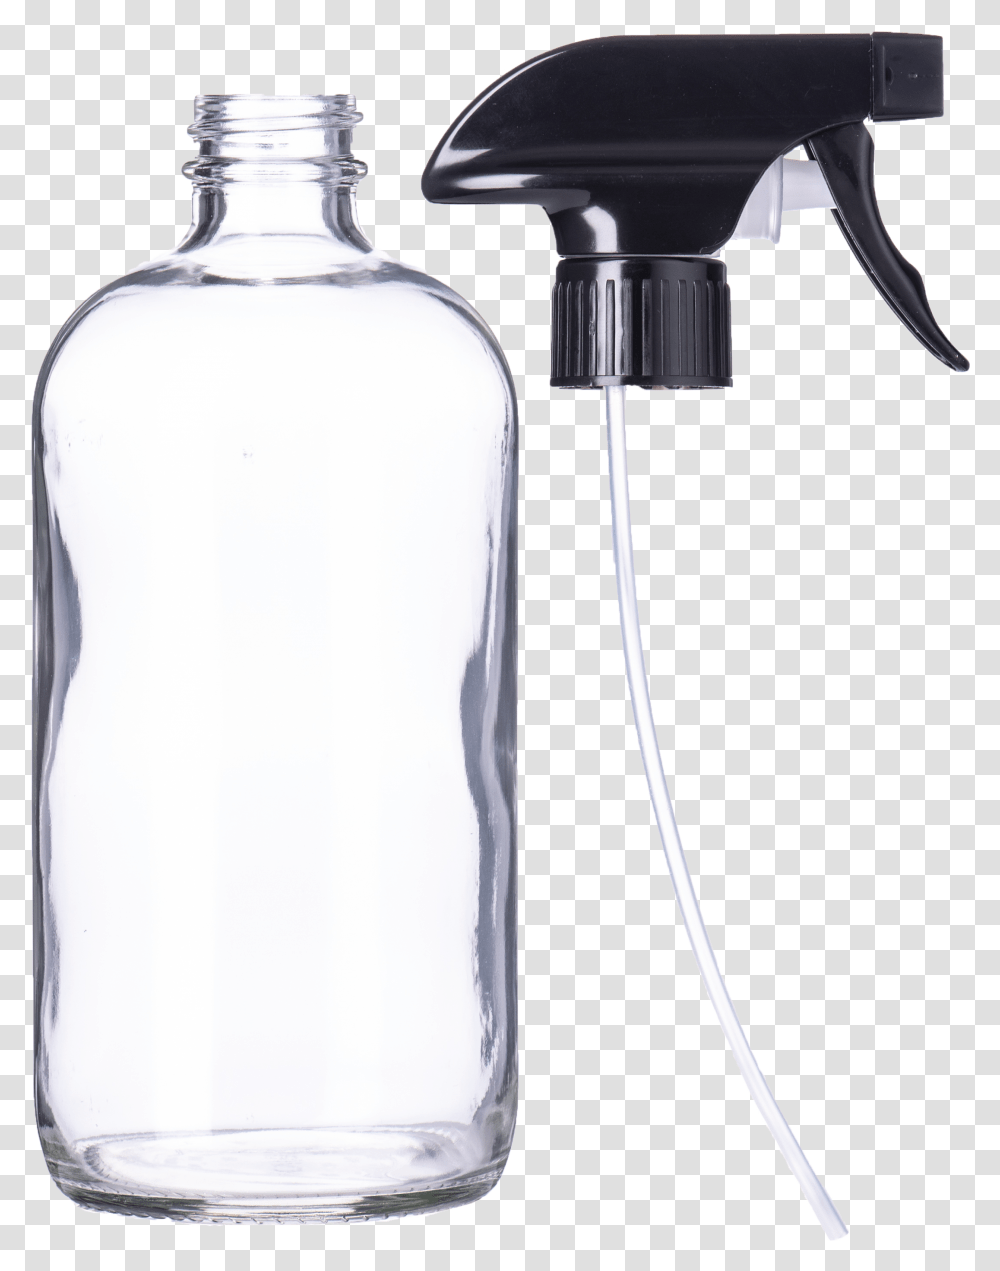 Glass Spray Bottle 16 Oz Wholesale, Indoors, Room, Water Bottle, Sink Transparent Png